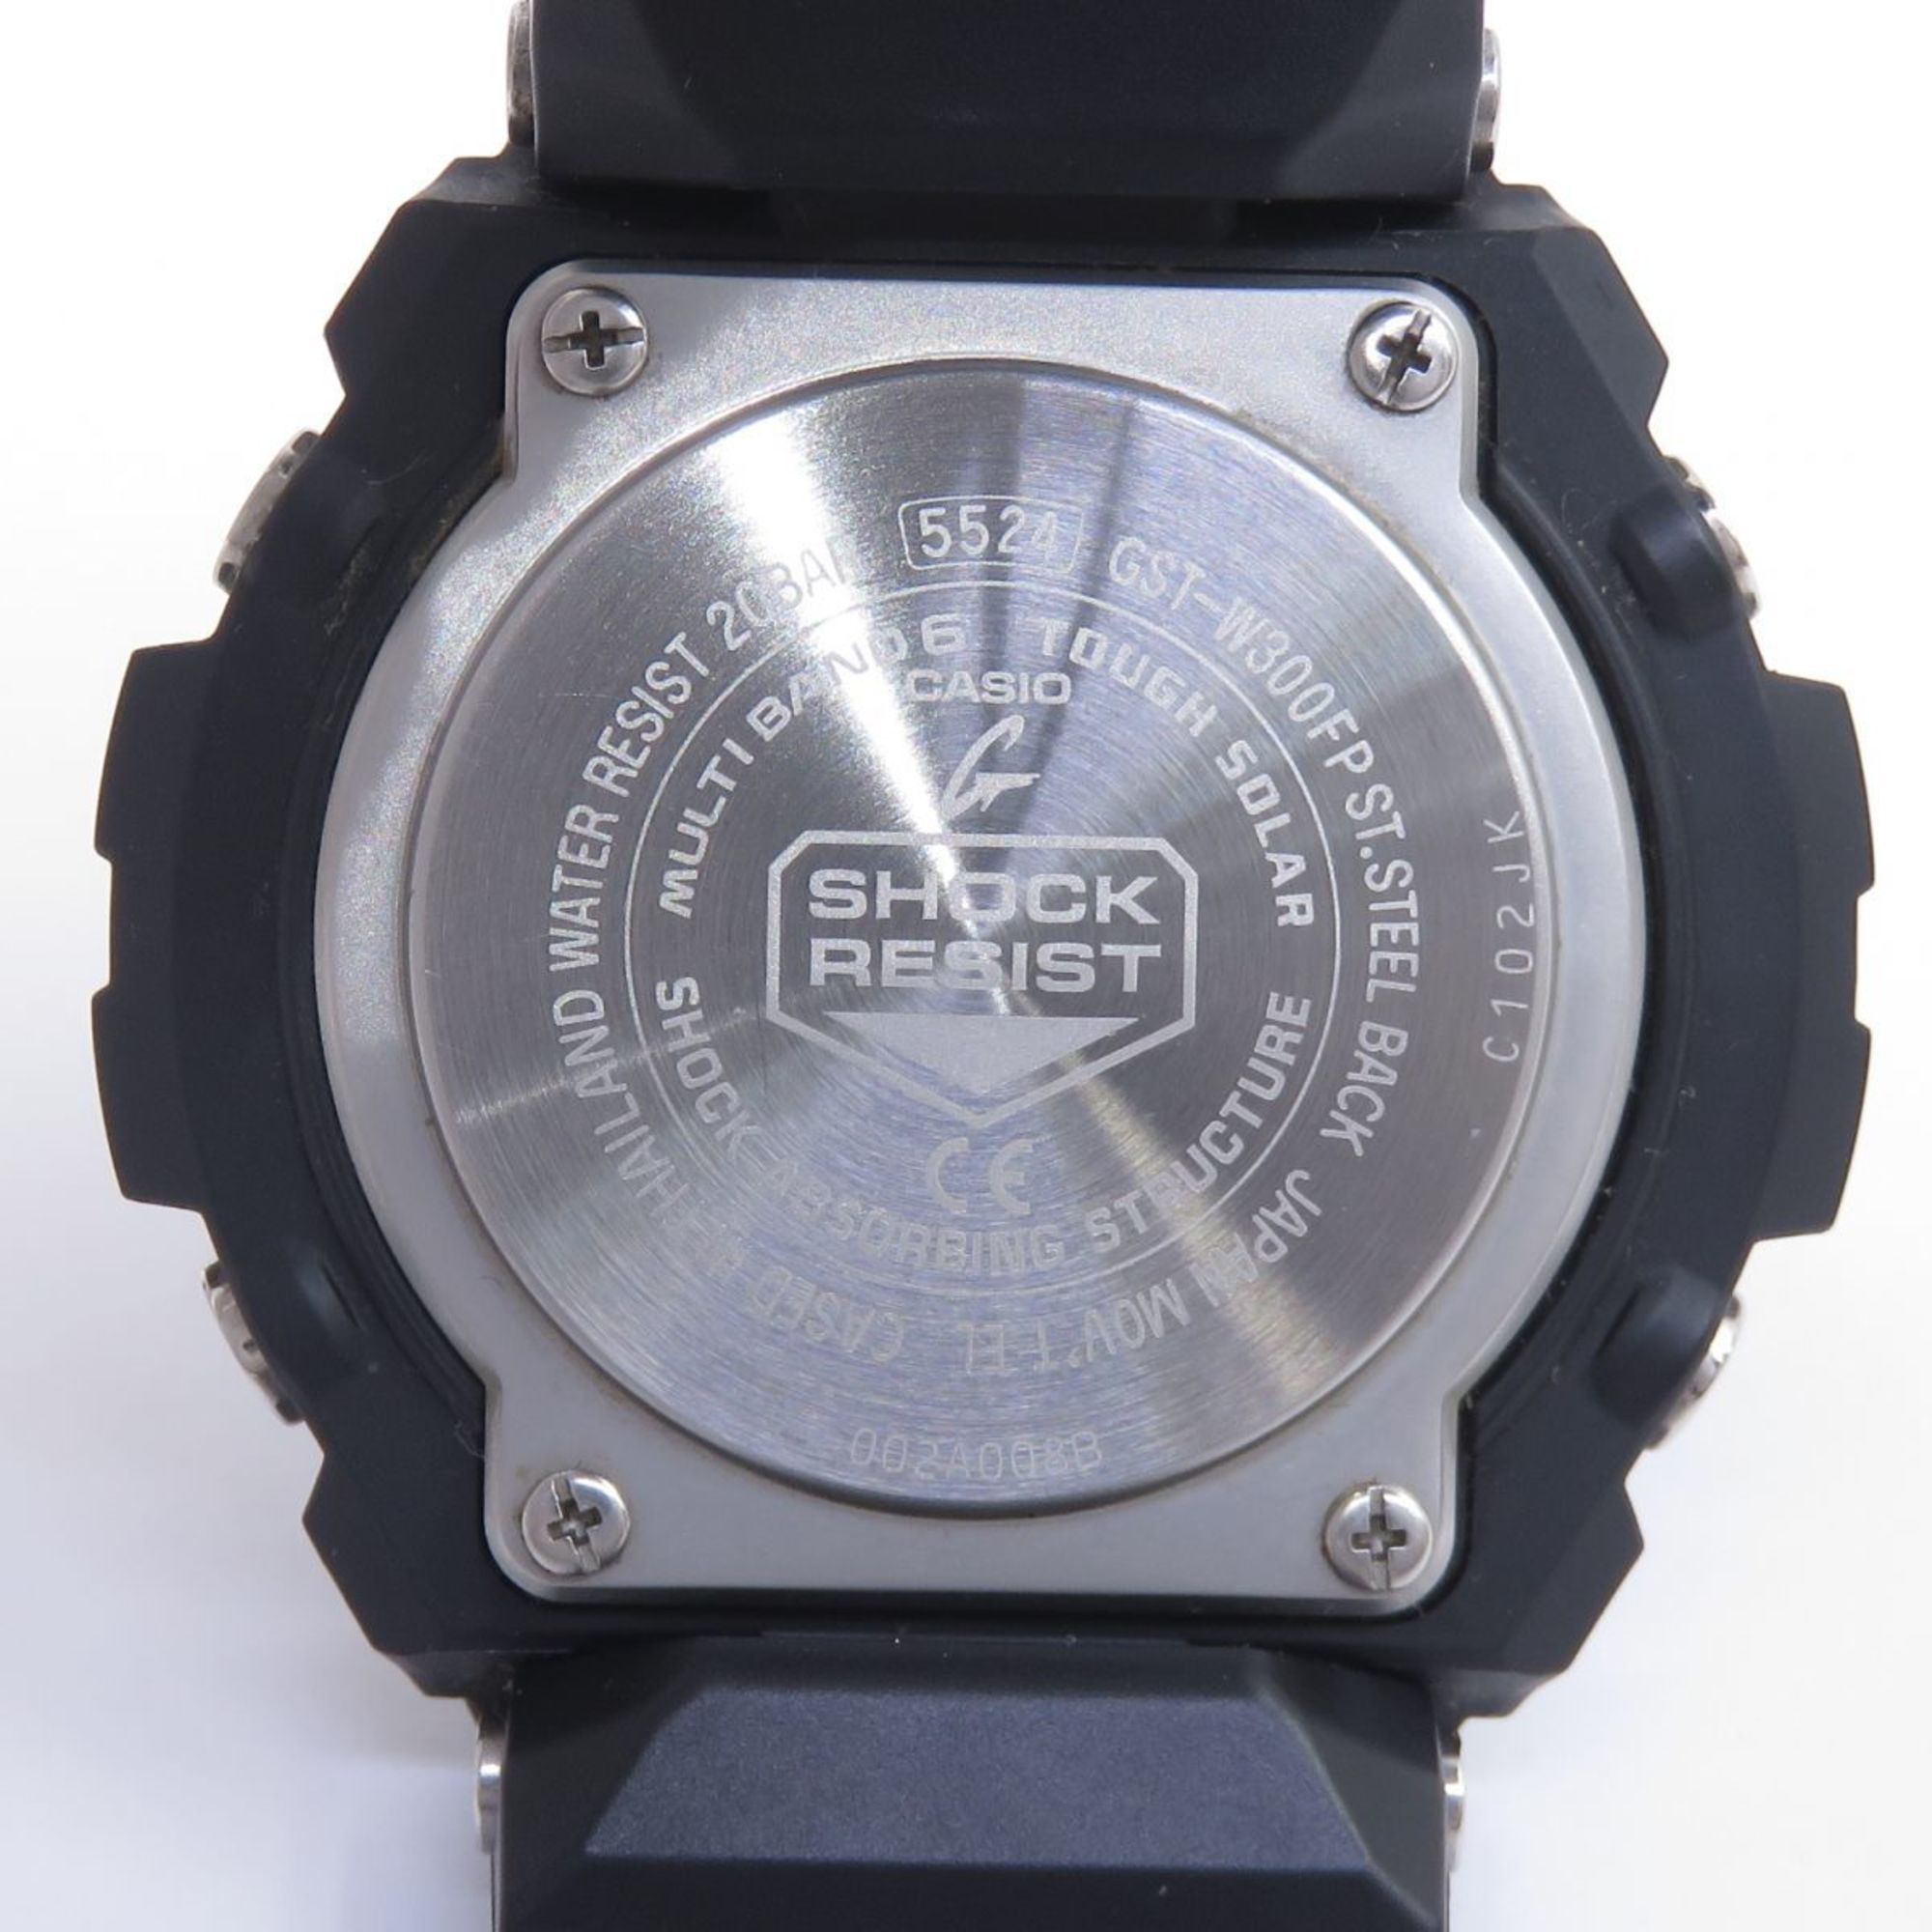 CASIO G-SHOCK G-STEEL Fire Package 2022 Model GST-W300FP-1A2JR Radio Solar Watch